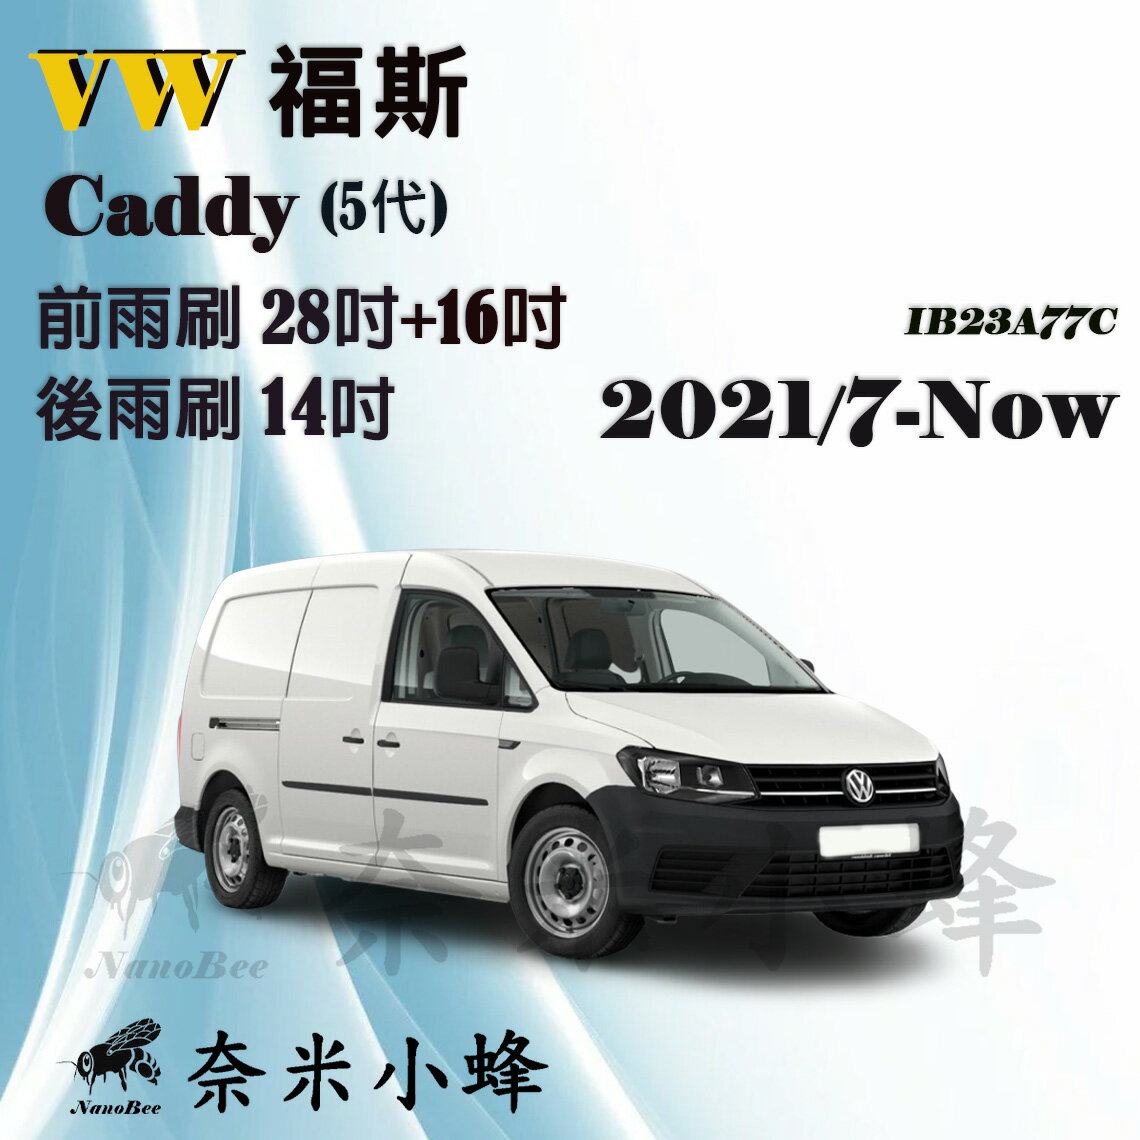 【奈米小蜂】VW福斯 CADDY Maxi 2021/7-NOW(5代)雨刷 Caddy後雨刷 矽膠雨刷 軟骨雨刷